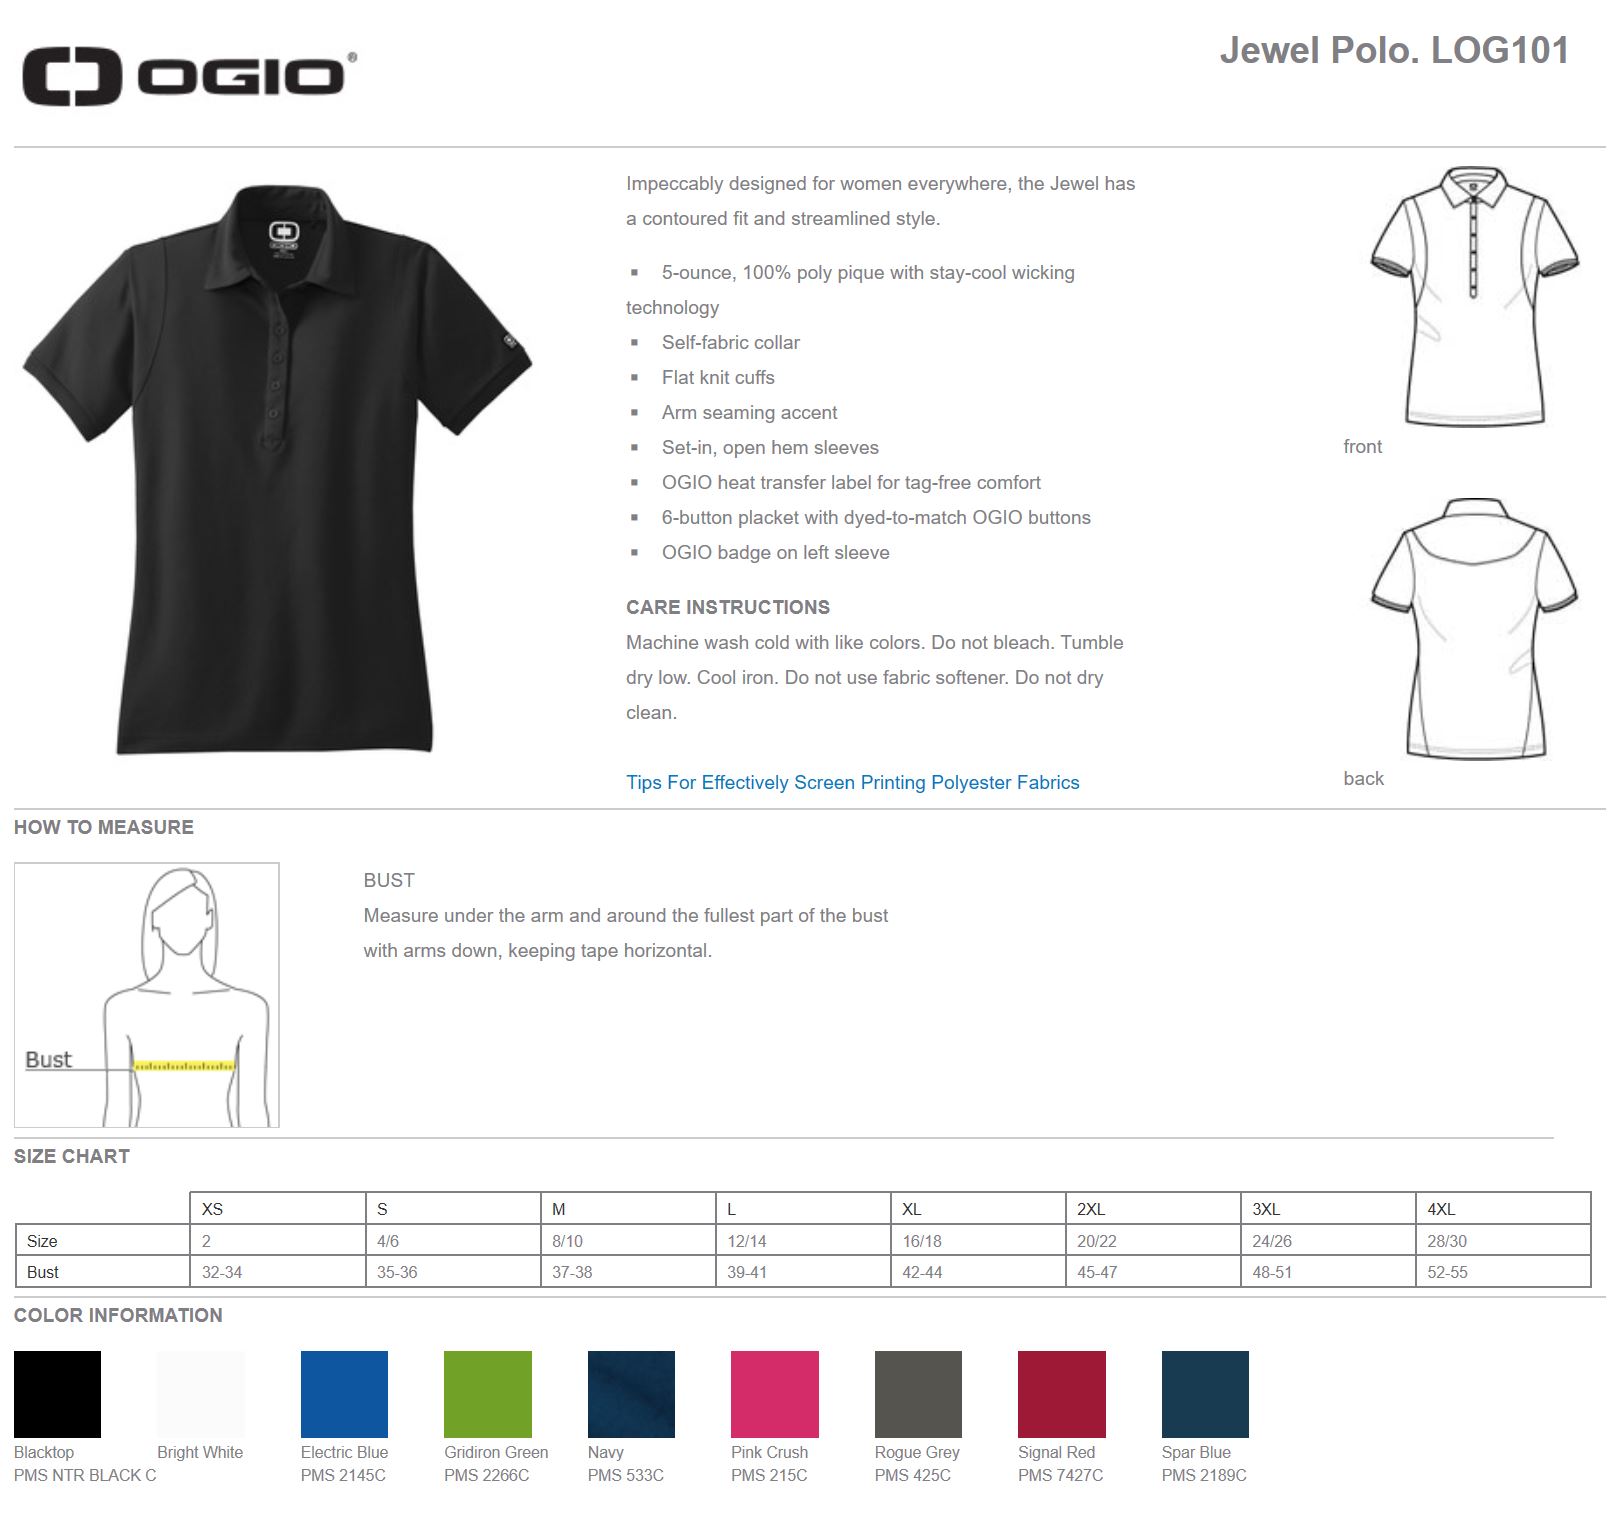 OGIO Jewel Polo LOG101 - Undaunted Clothing Product Designer